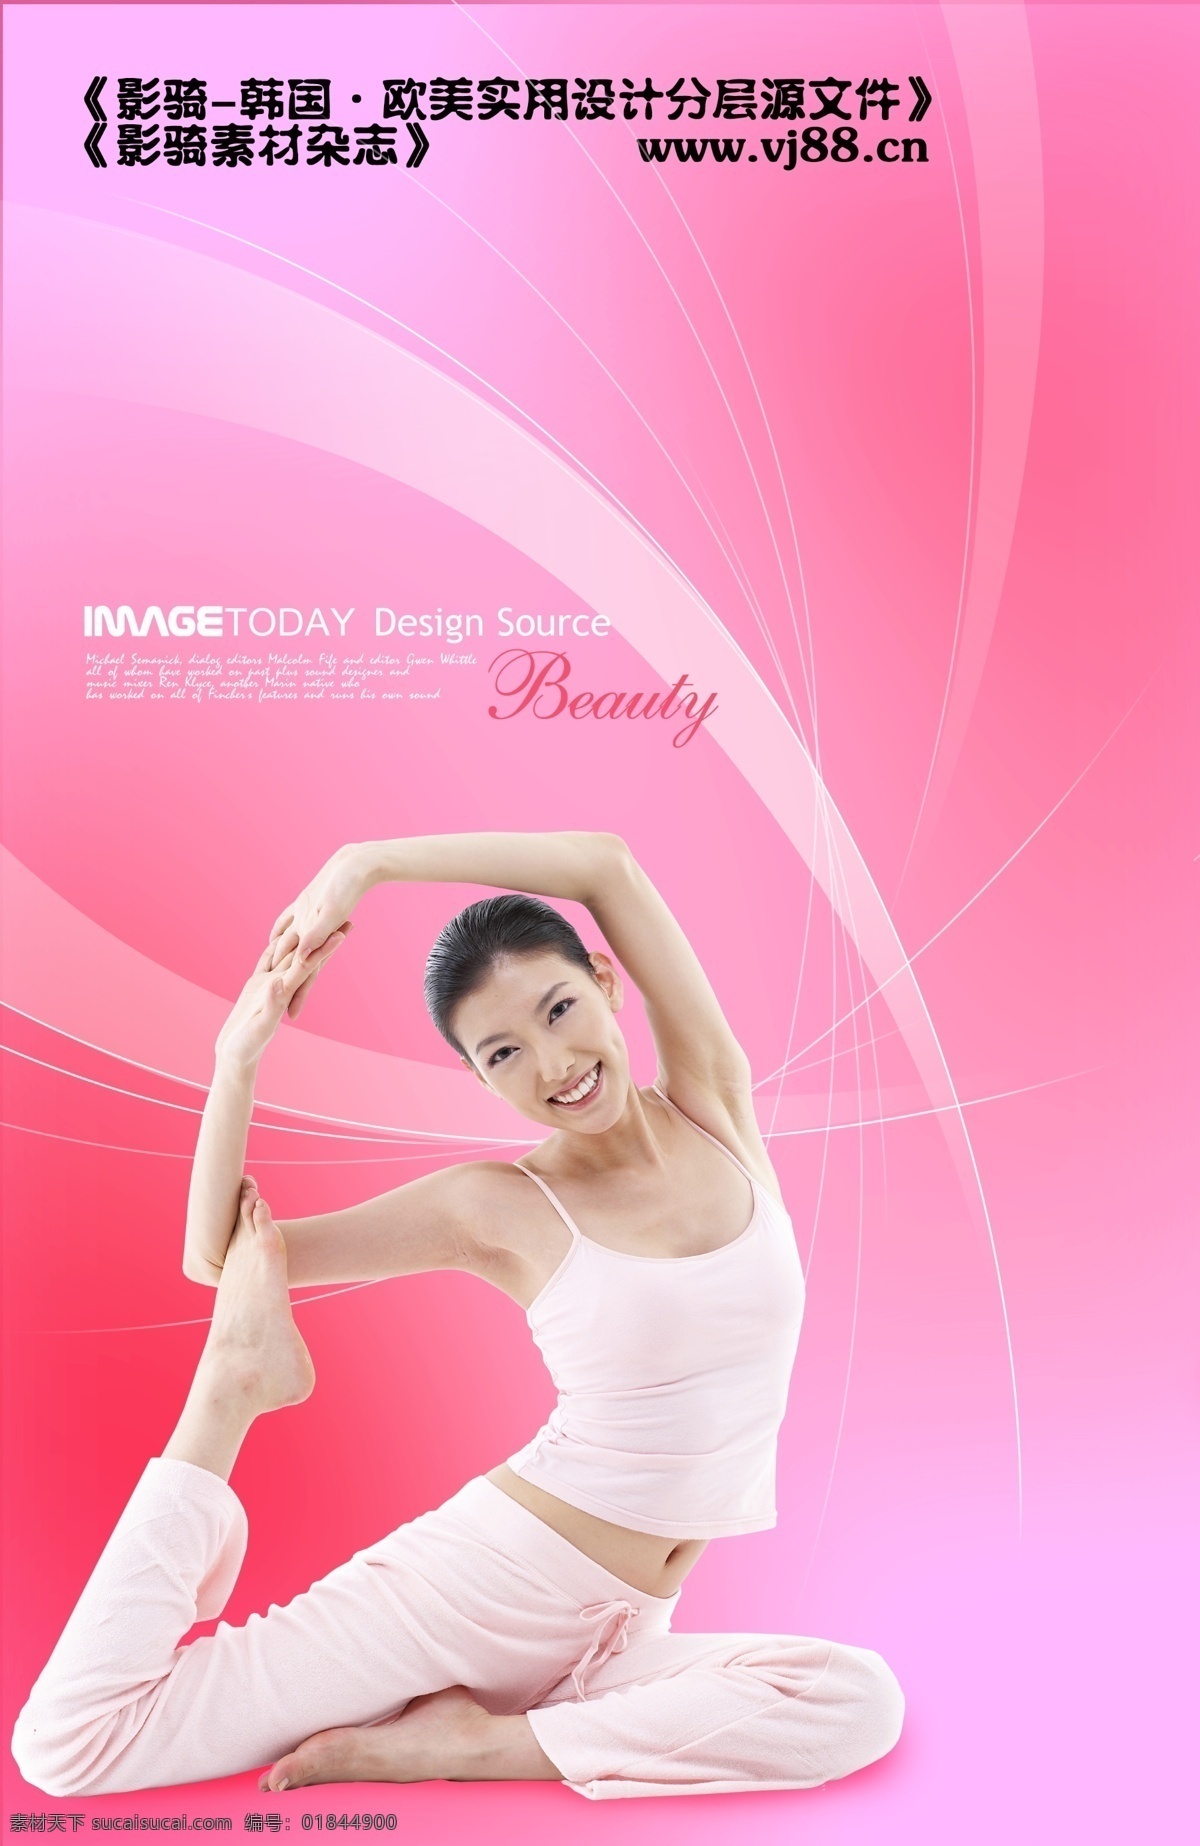 健康 健身 靓丽 美女 美女瑜伽 青春 瑜伽 健康瑜伽 透明设计效果 psd源文件